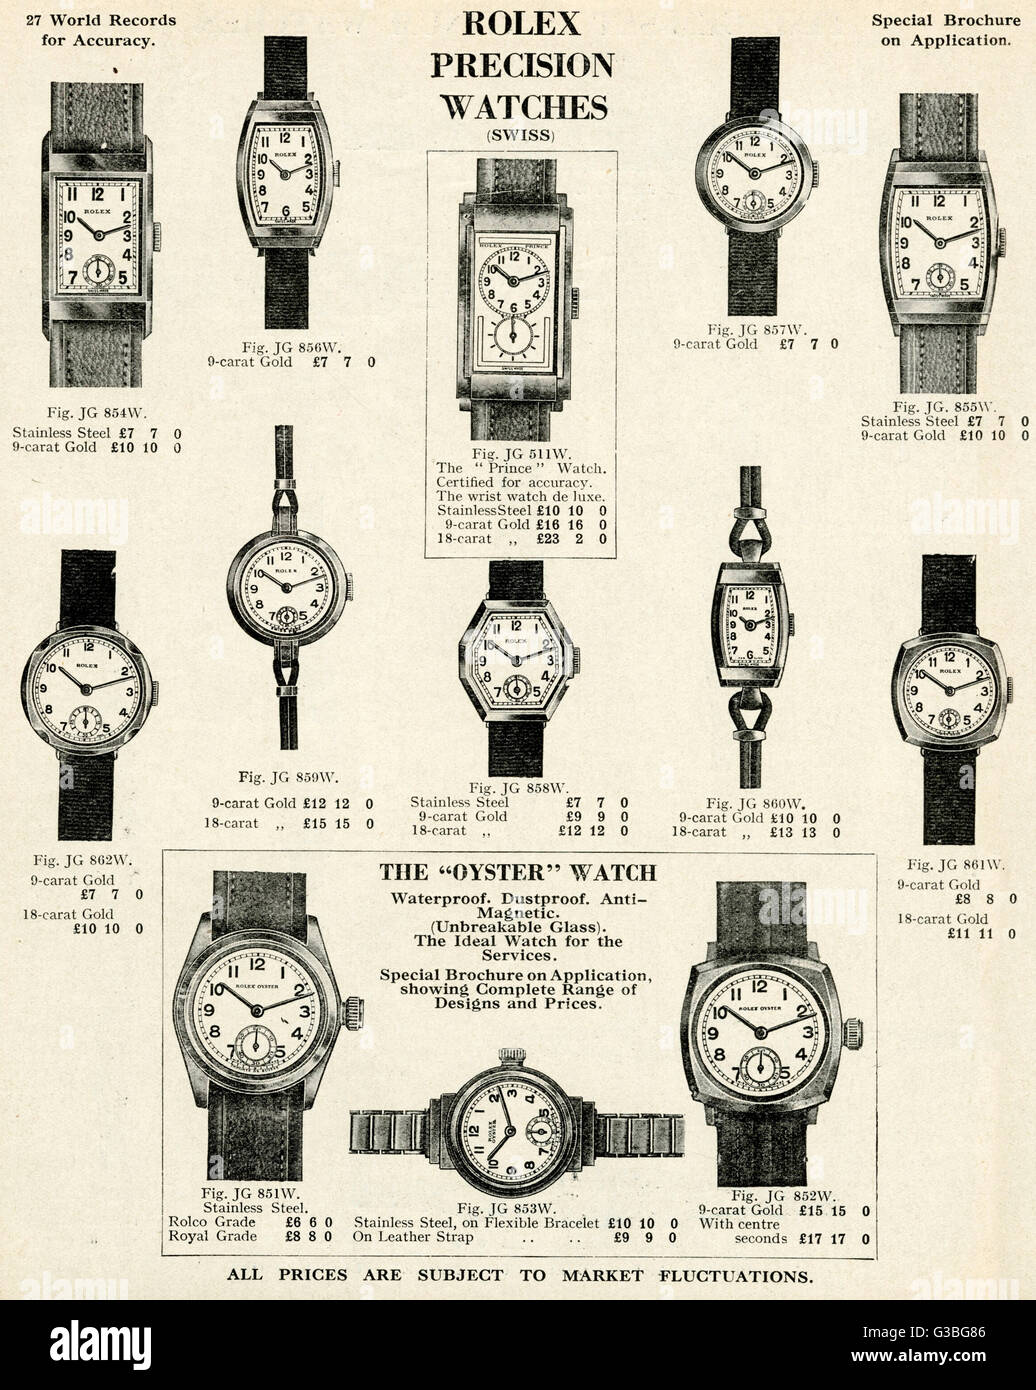 Eine Auswahl an Damen Armbanduhren Rolex "Oyster" Uhr, die wasserdicht,  staubdicht, anti-magnetisch und unzerbrechlichen Glas. Produkte für die  Armee und Marine Katalog. Datum: 1937 Stockfotografie - Alamy